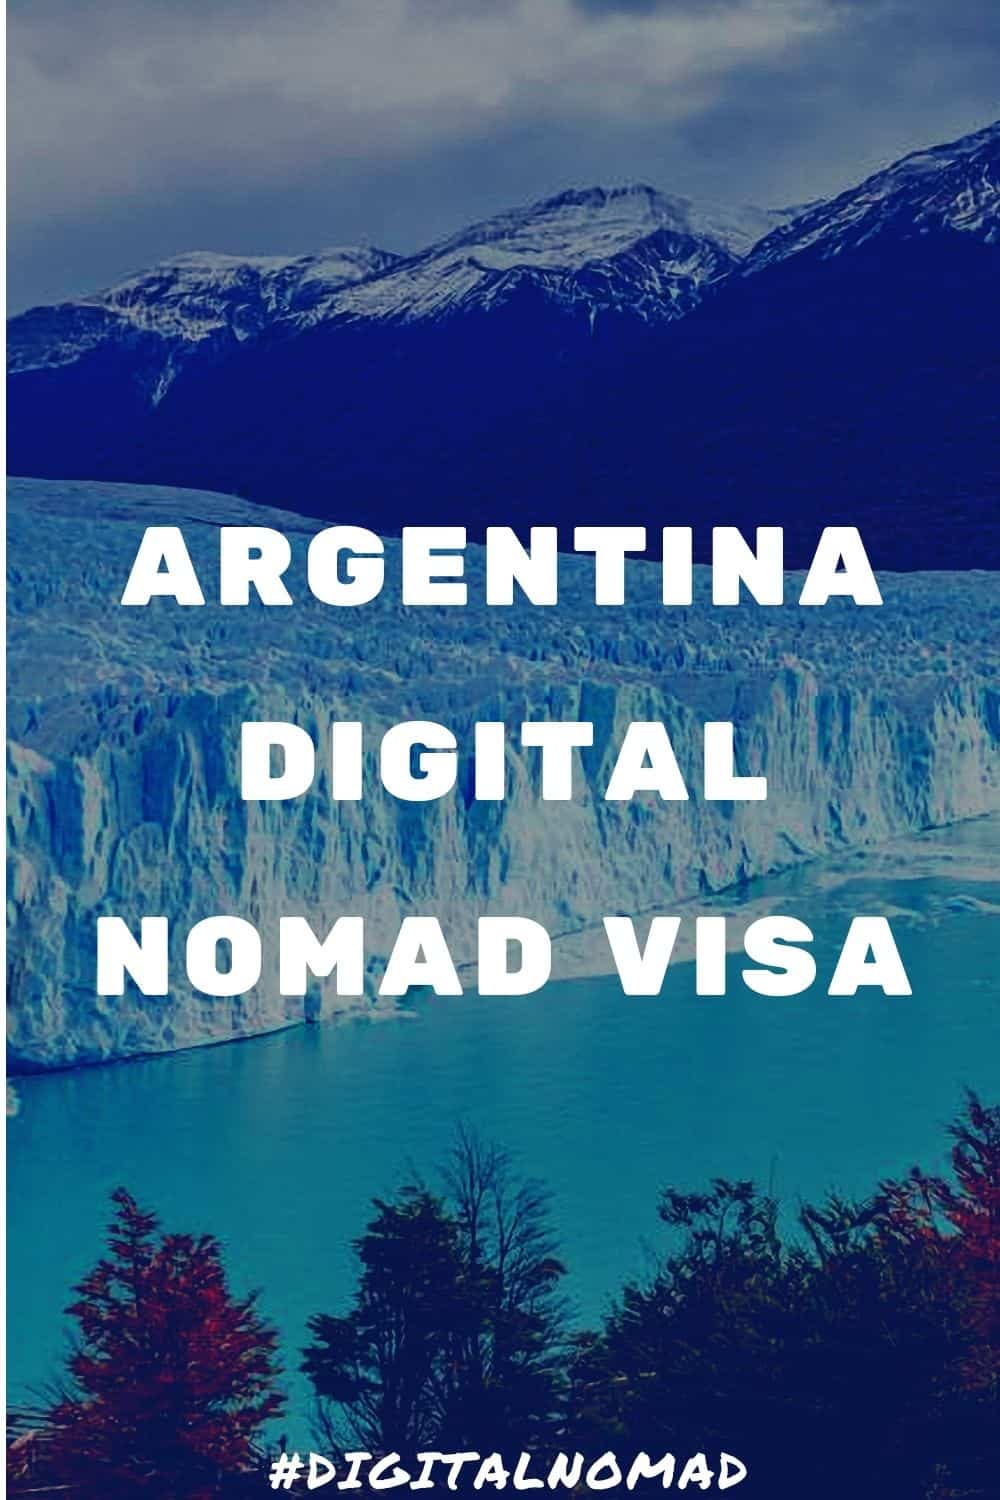 Argentina Digital Nomad Visa: The latest information